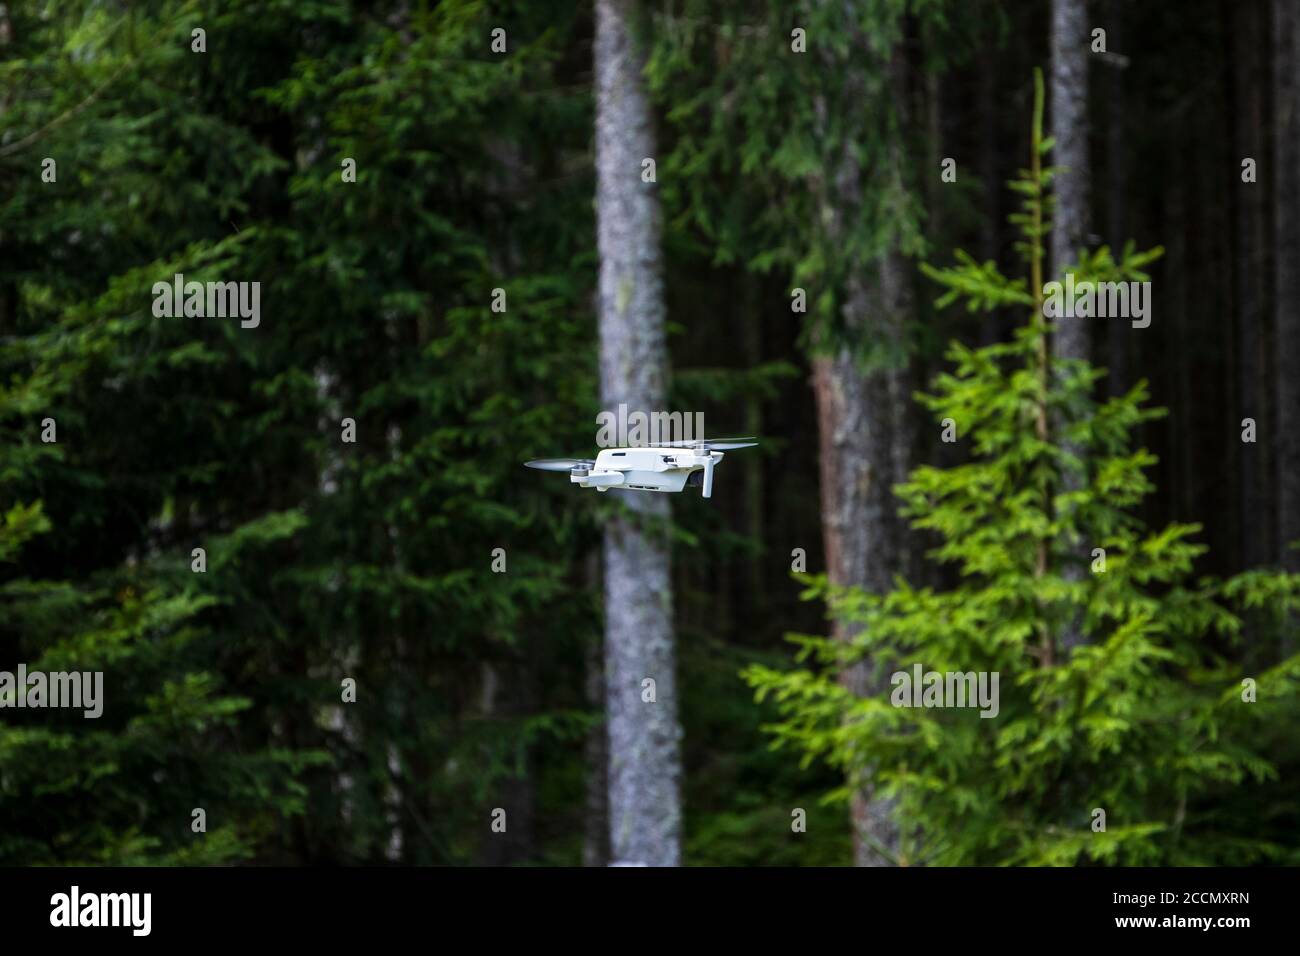 Un nuovo punto di vista: La natura vista da un drone Foto Stock